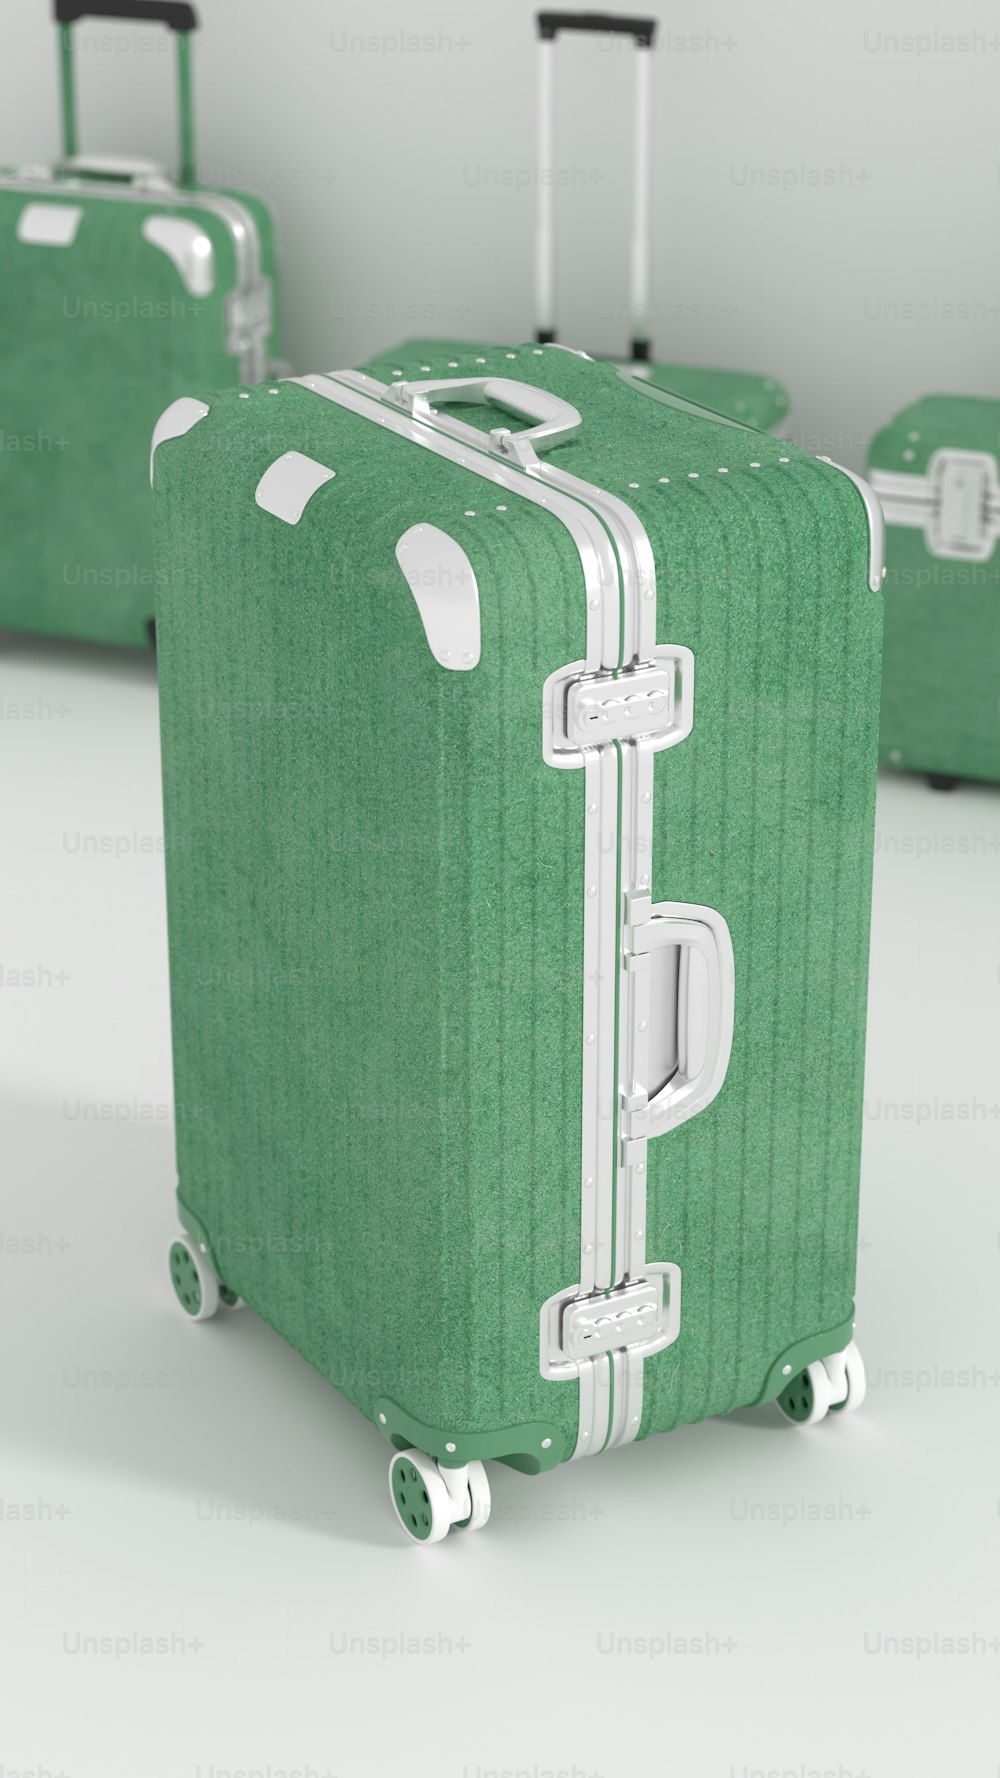 Tres piezas de equipaje verde sentadas una al lado de la otra